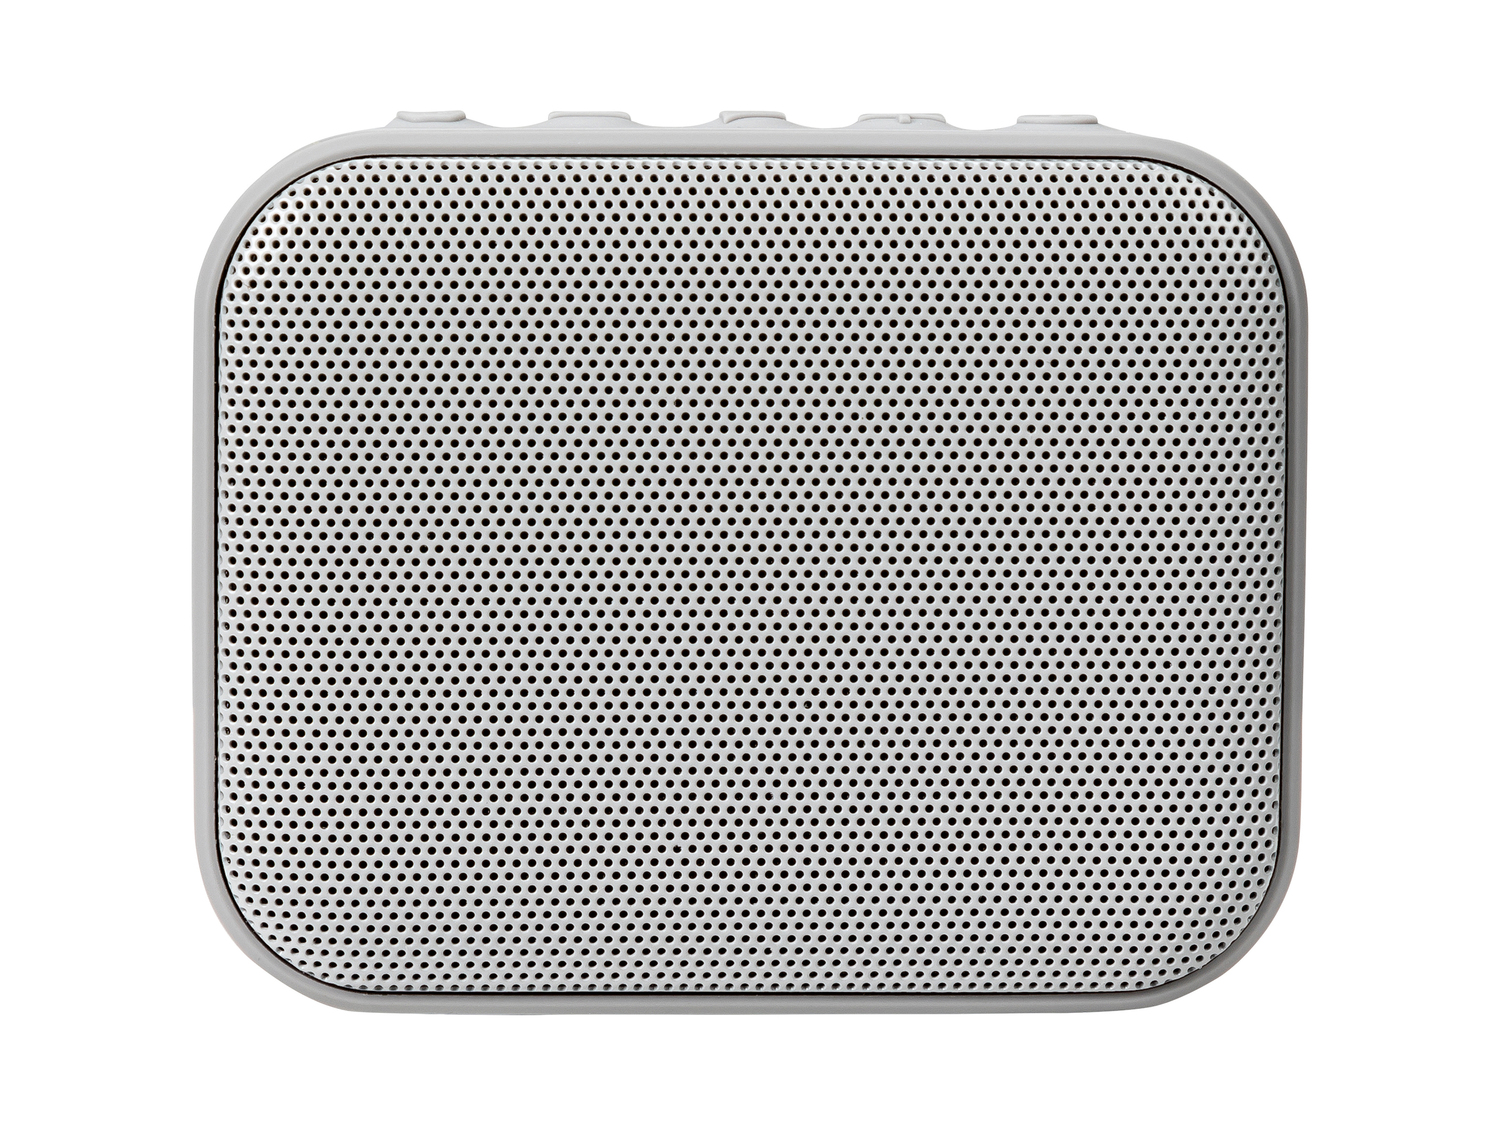 Altoparlante Bluetooth Silvercrest, prezzo 14.99 € 
- Funzione True Wireless ...